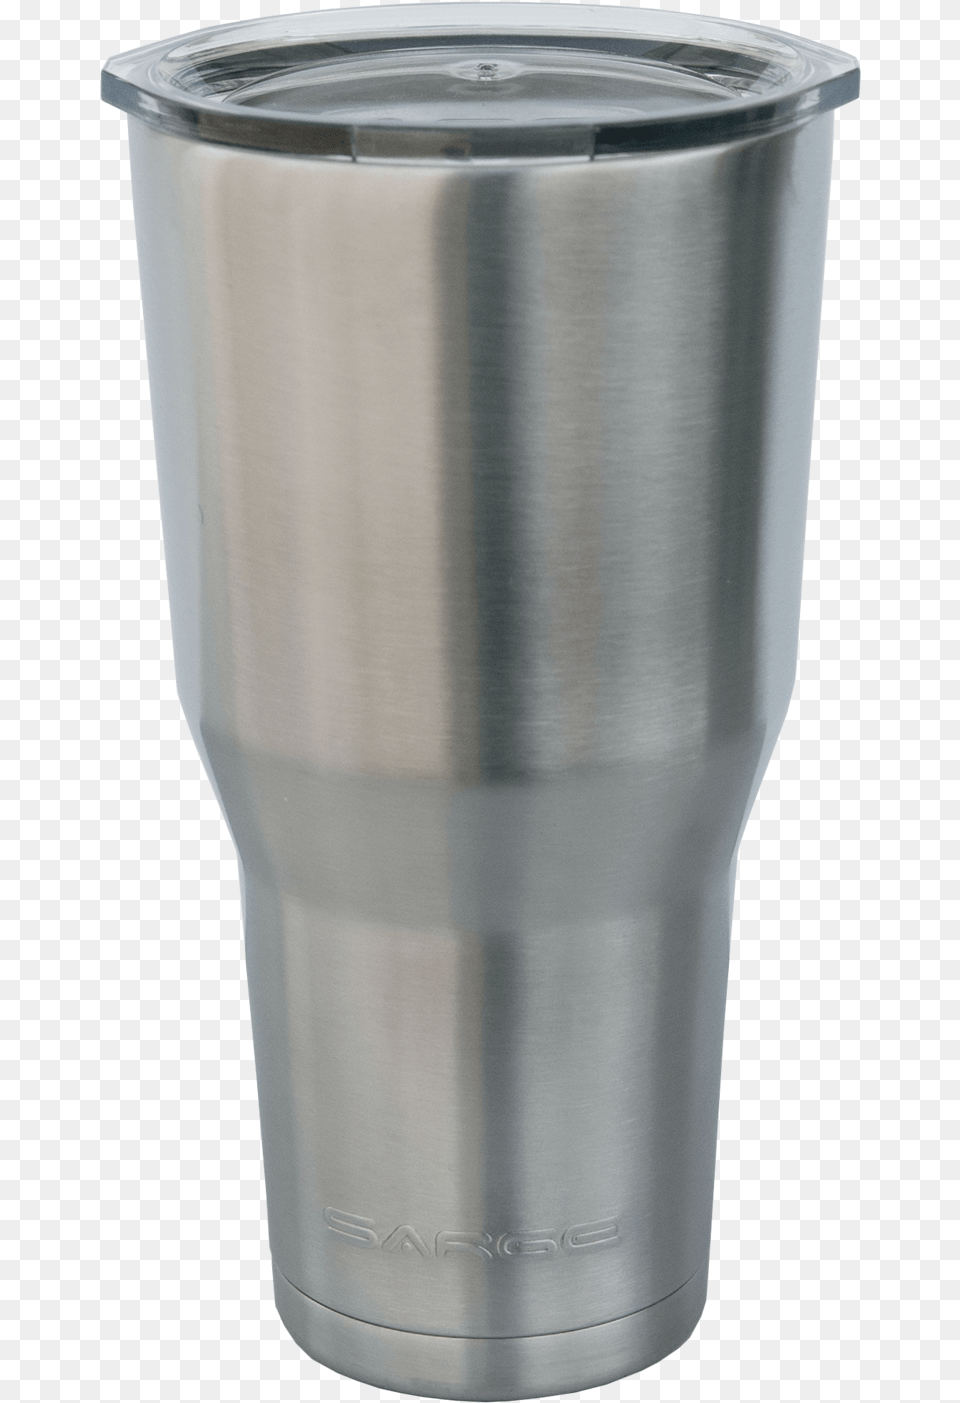 Sarge Desert Cup Plastic, Steel, Bottle, Shaker Free Png Download